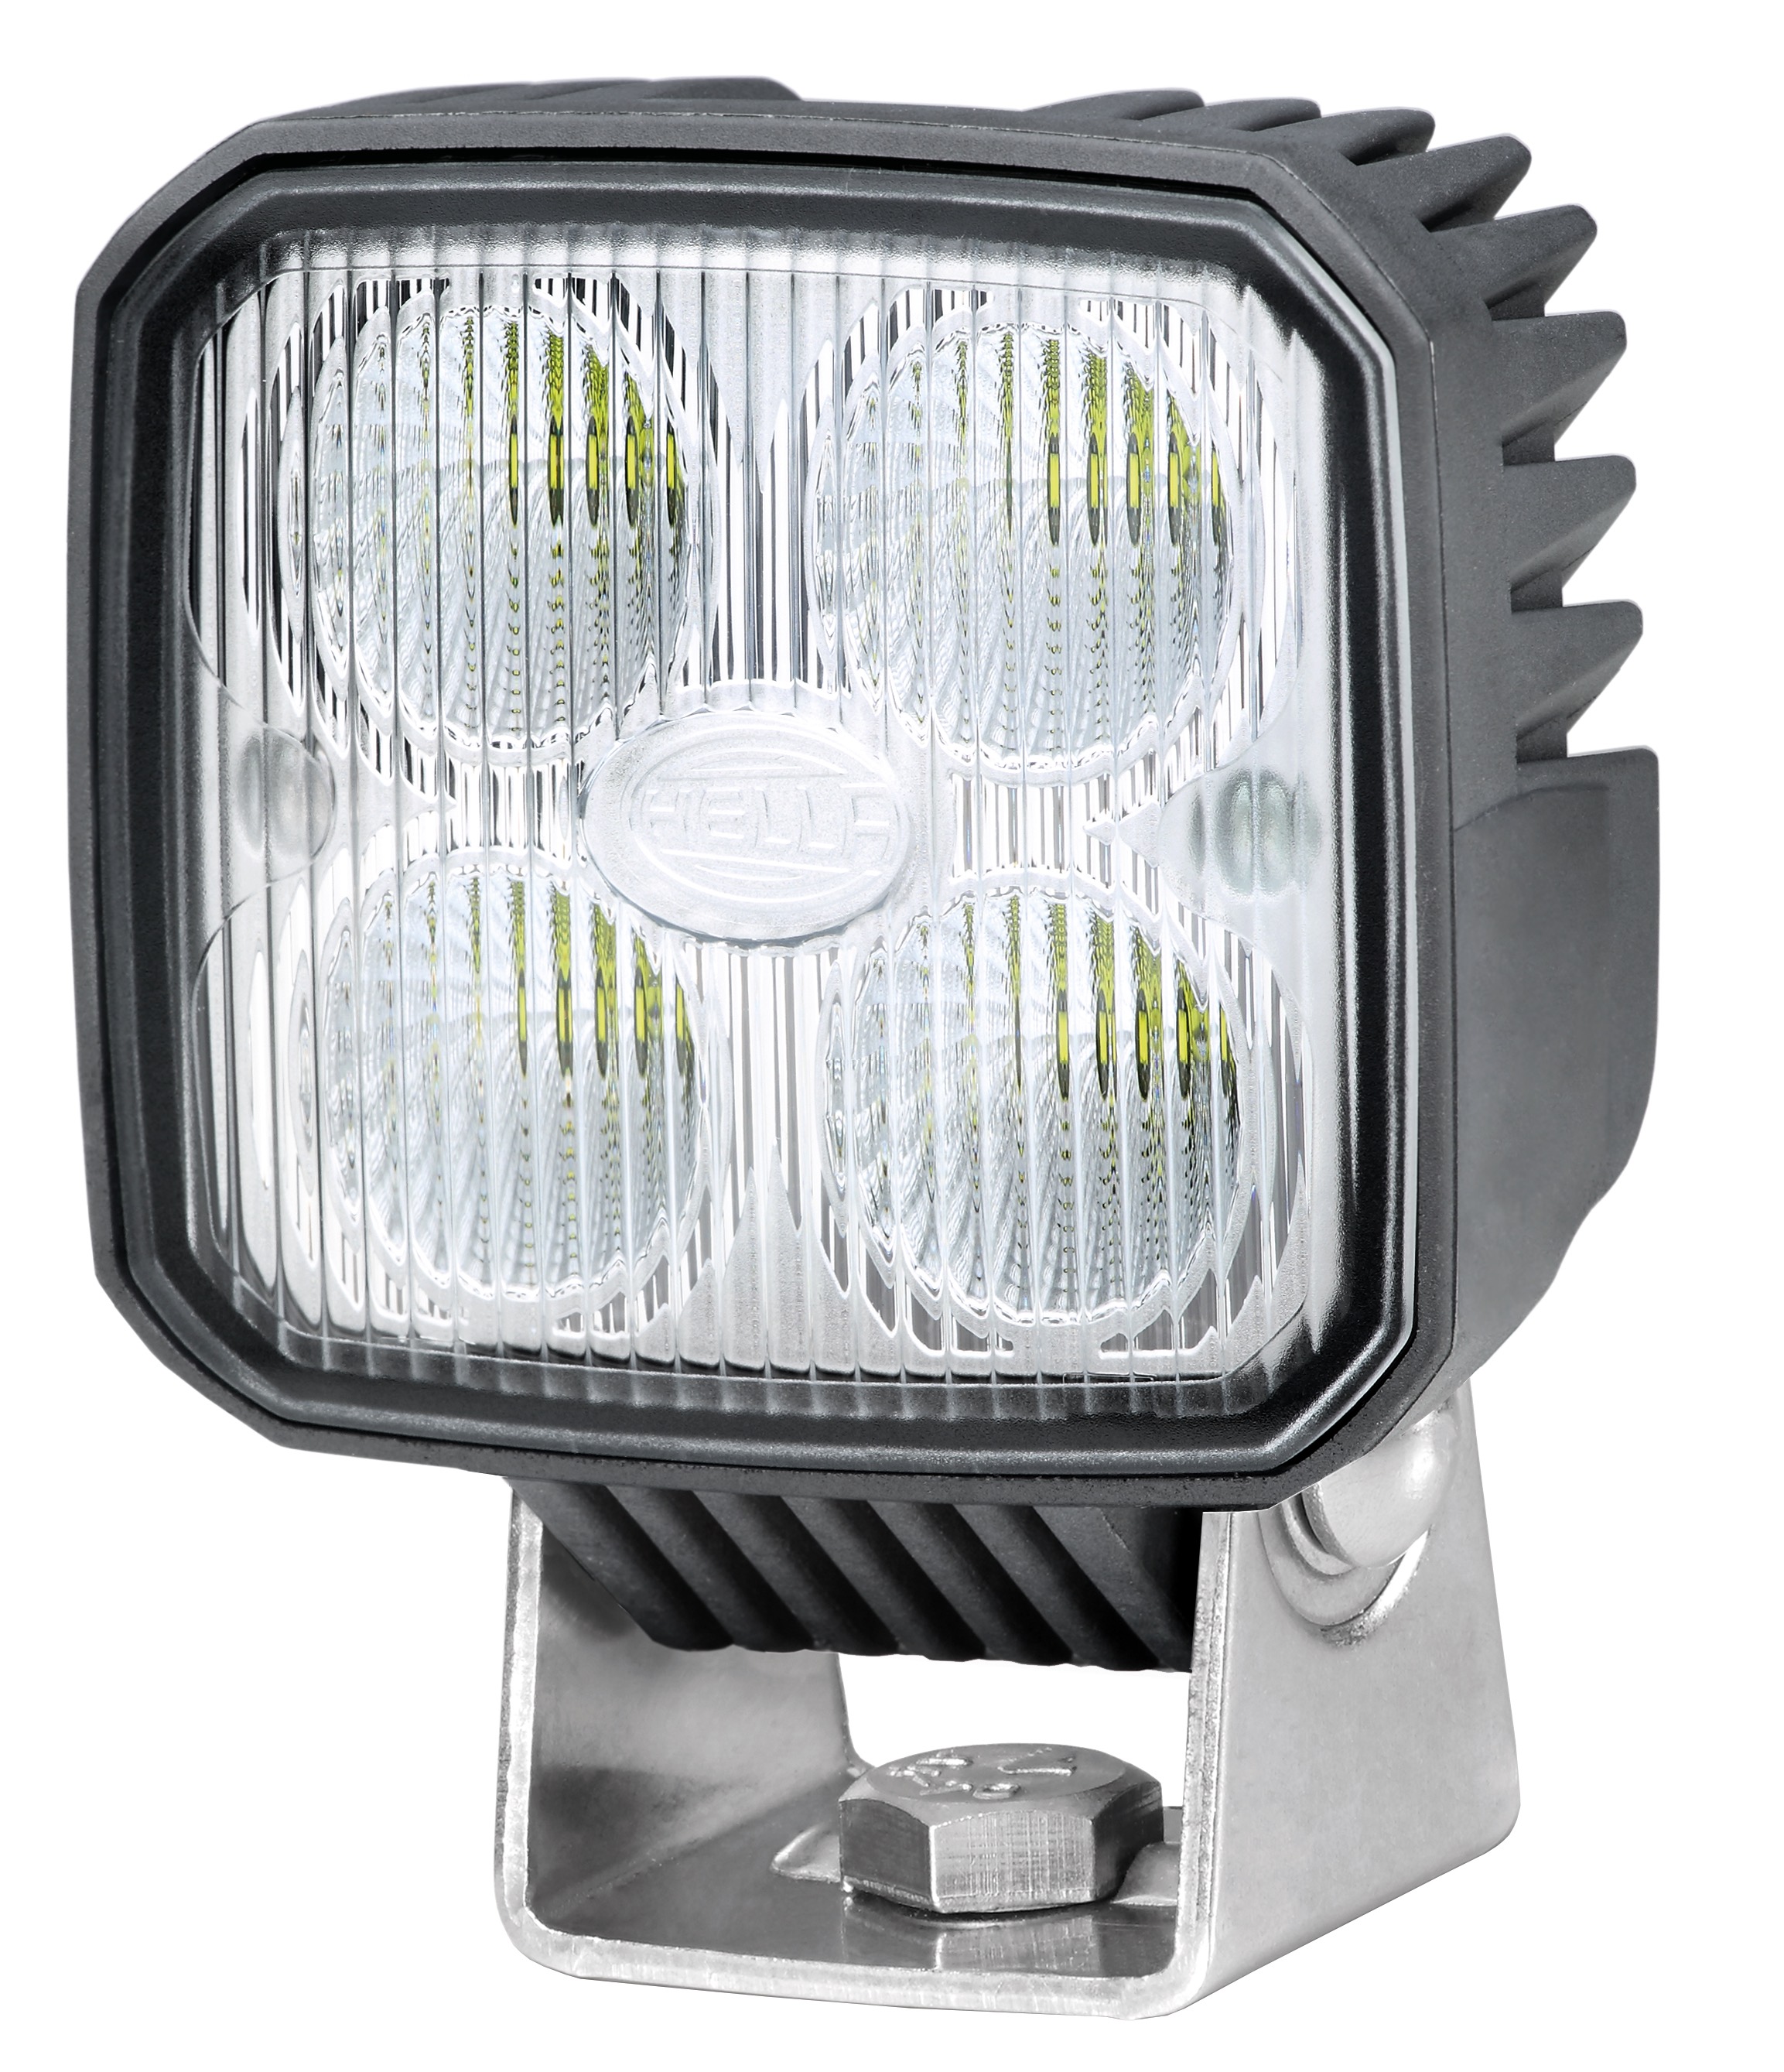 Hella Q90 compact LED Arbeitsscheinwerfer für den Ernteeinsatz